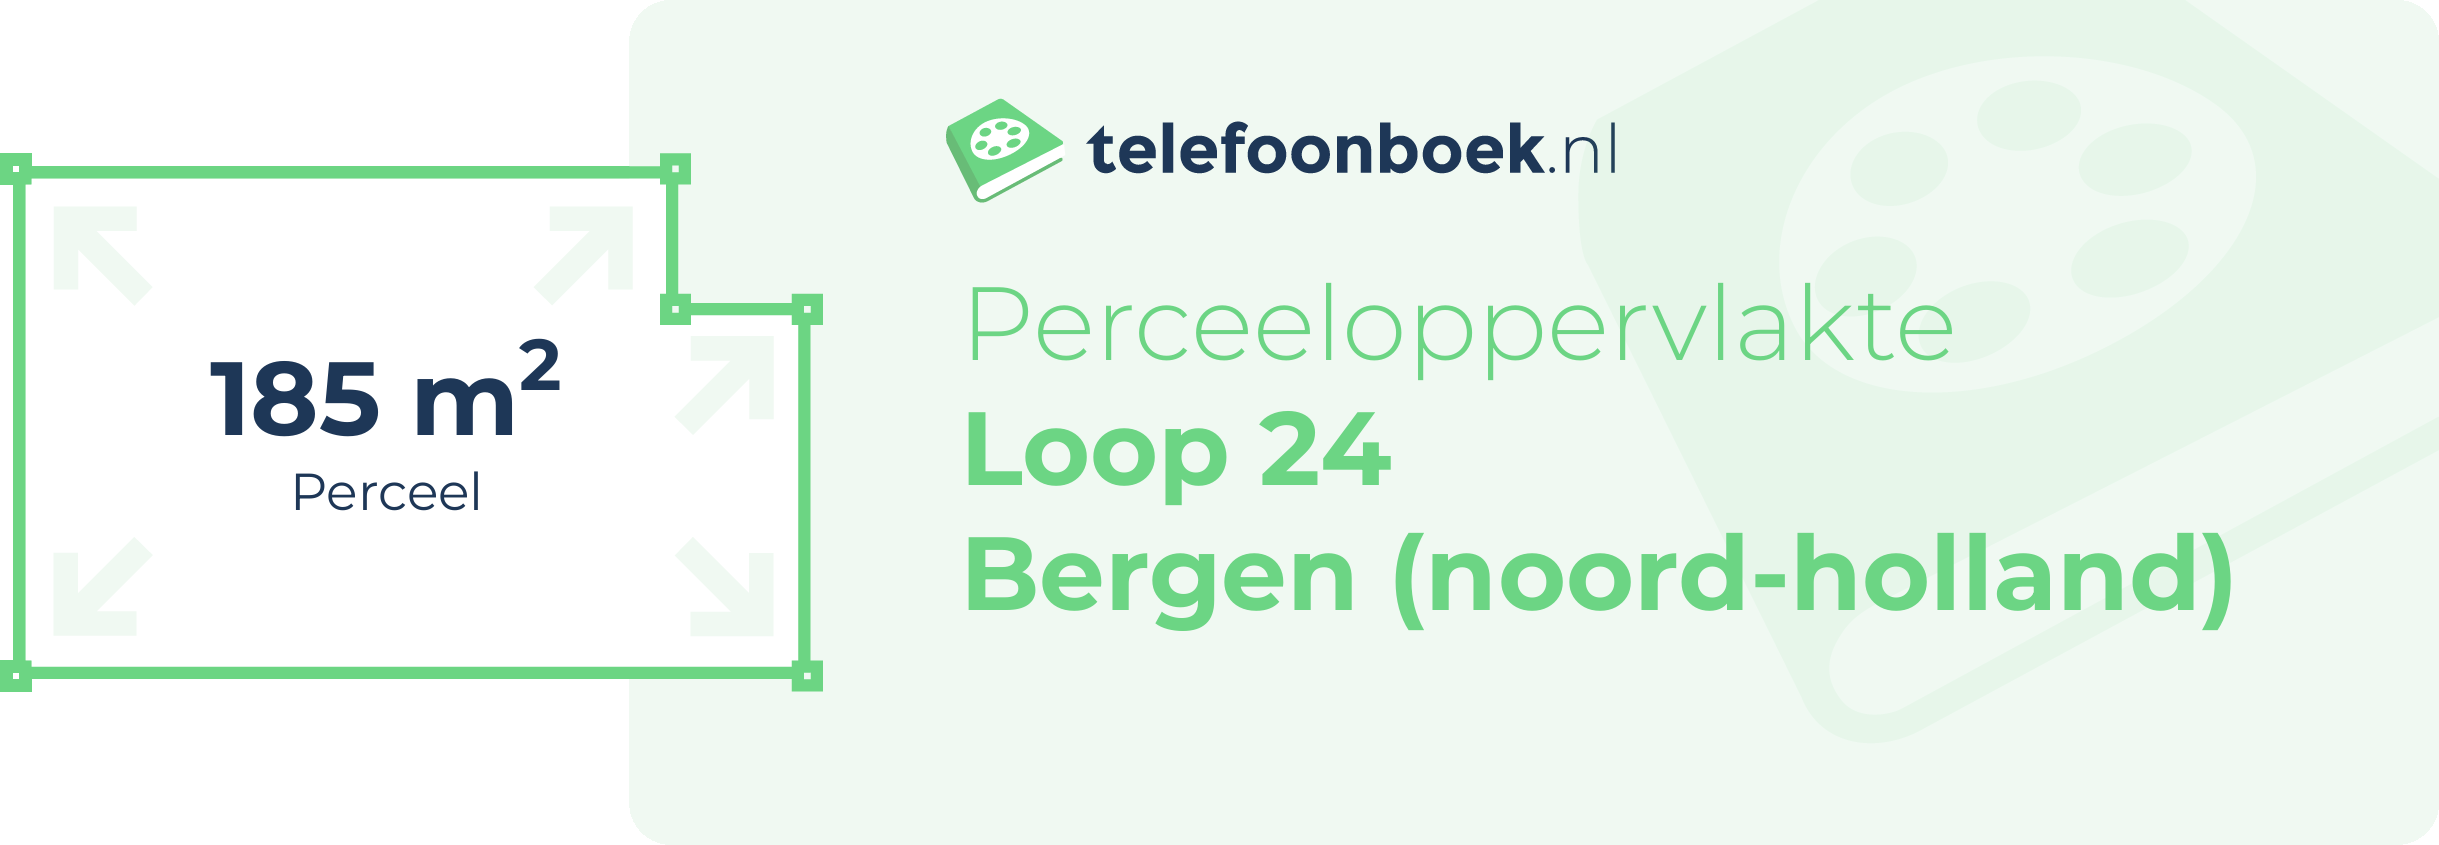 Perceeloppervlakte Loop 24 Bergen (Noord-Holland)